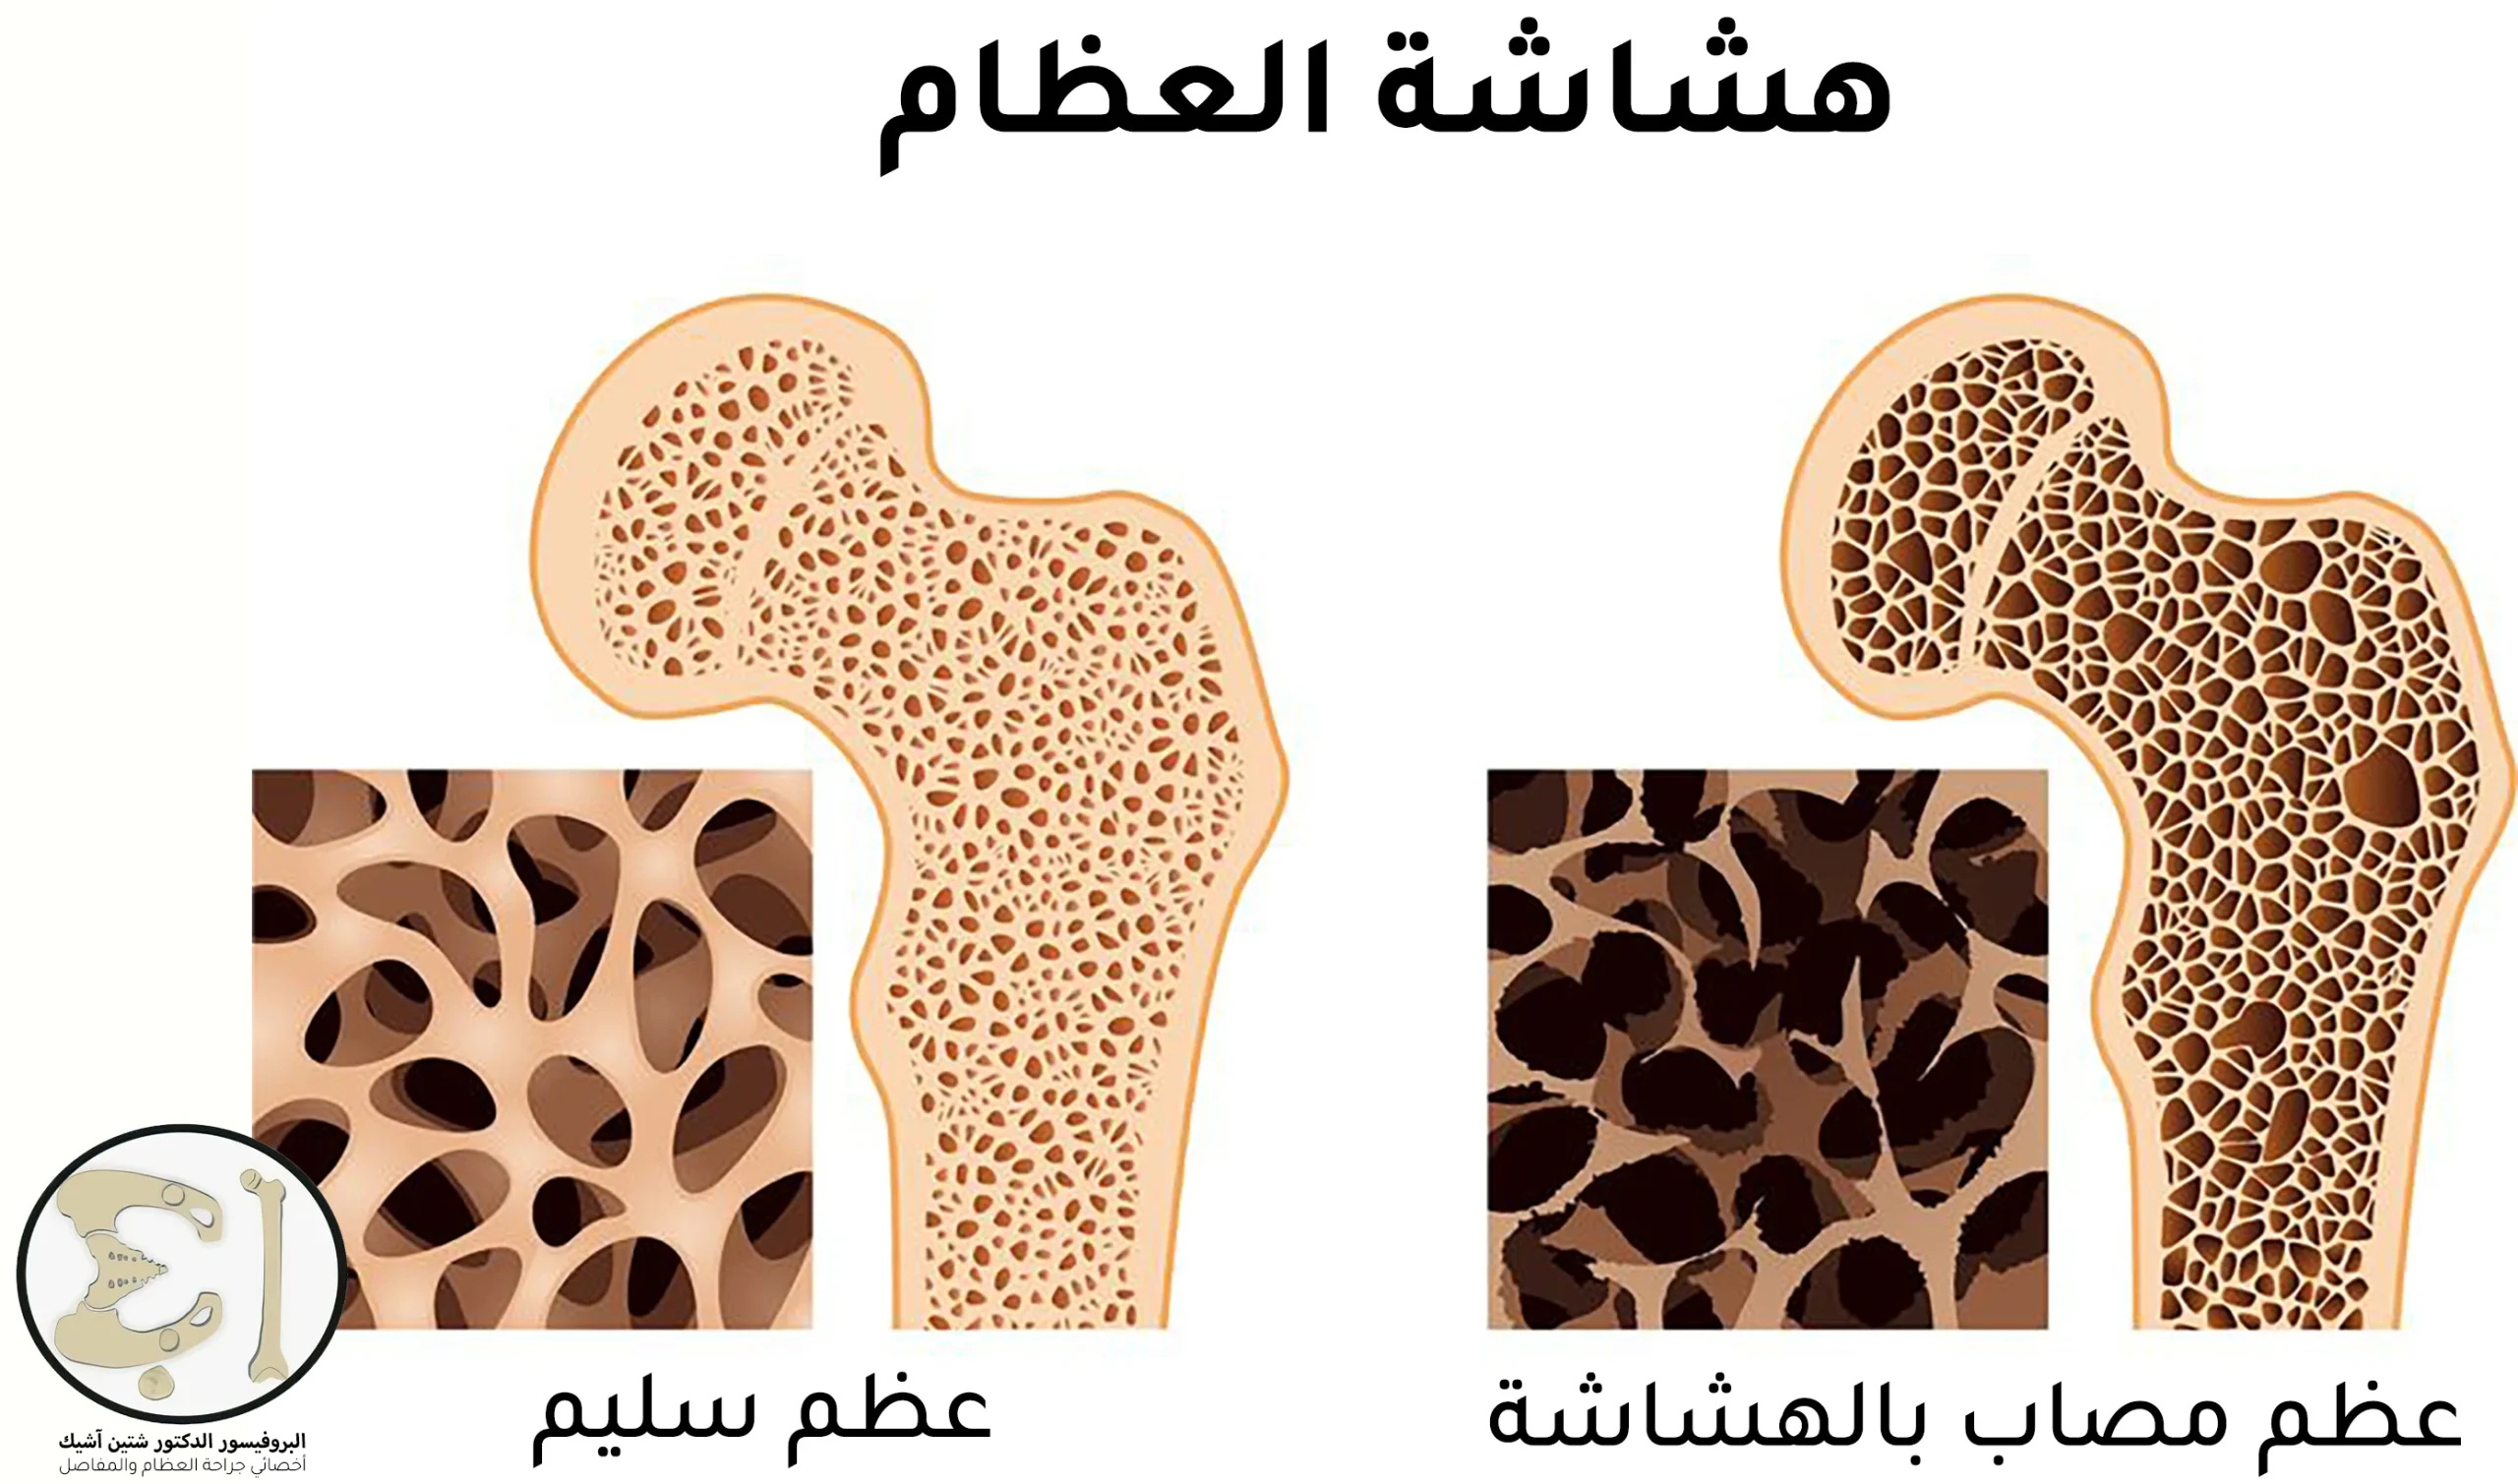 صورة توضح الفرق بين العظم الطبيعي والعظم المصاب بهشاشة العظام